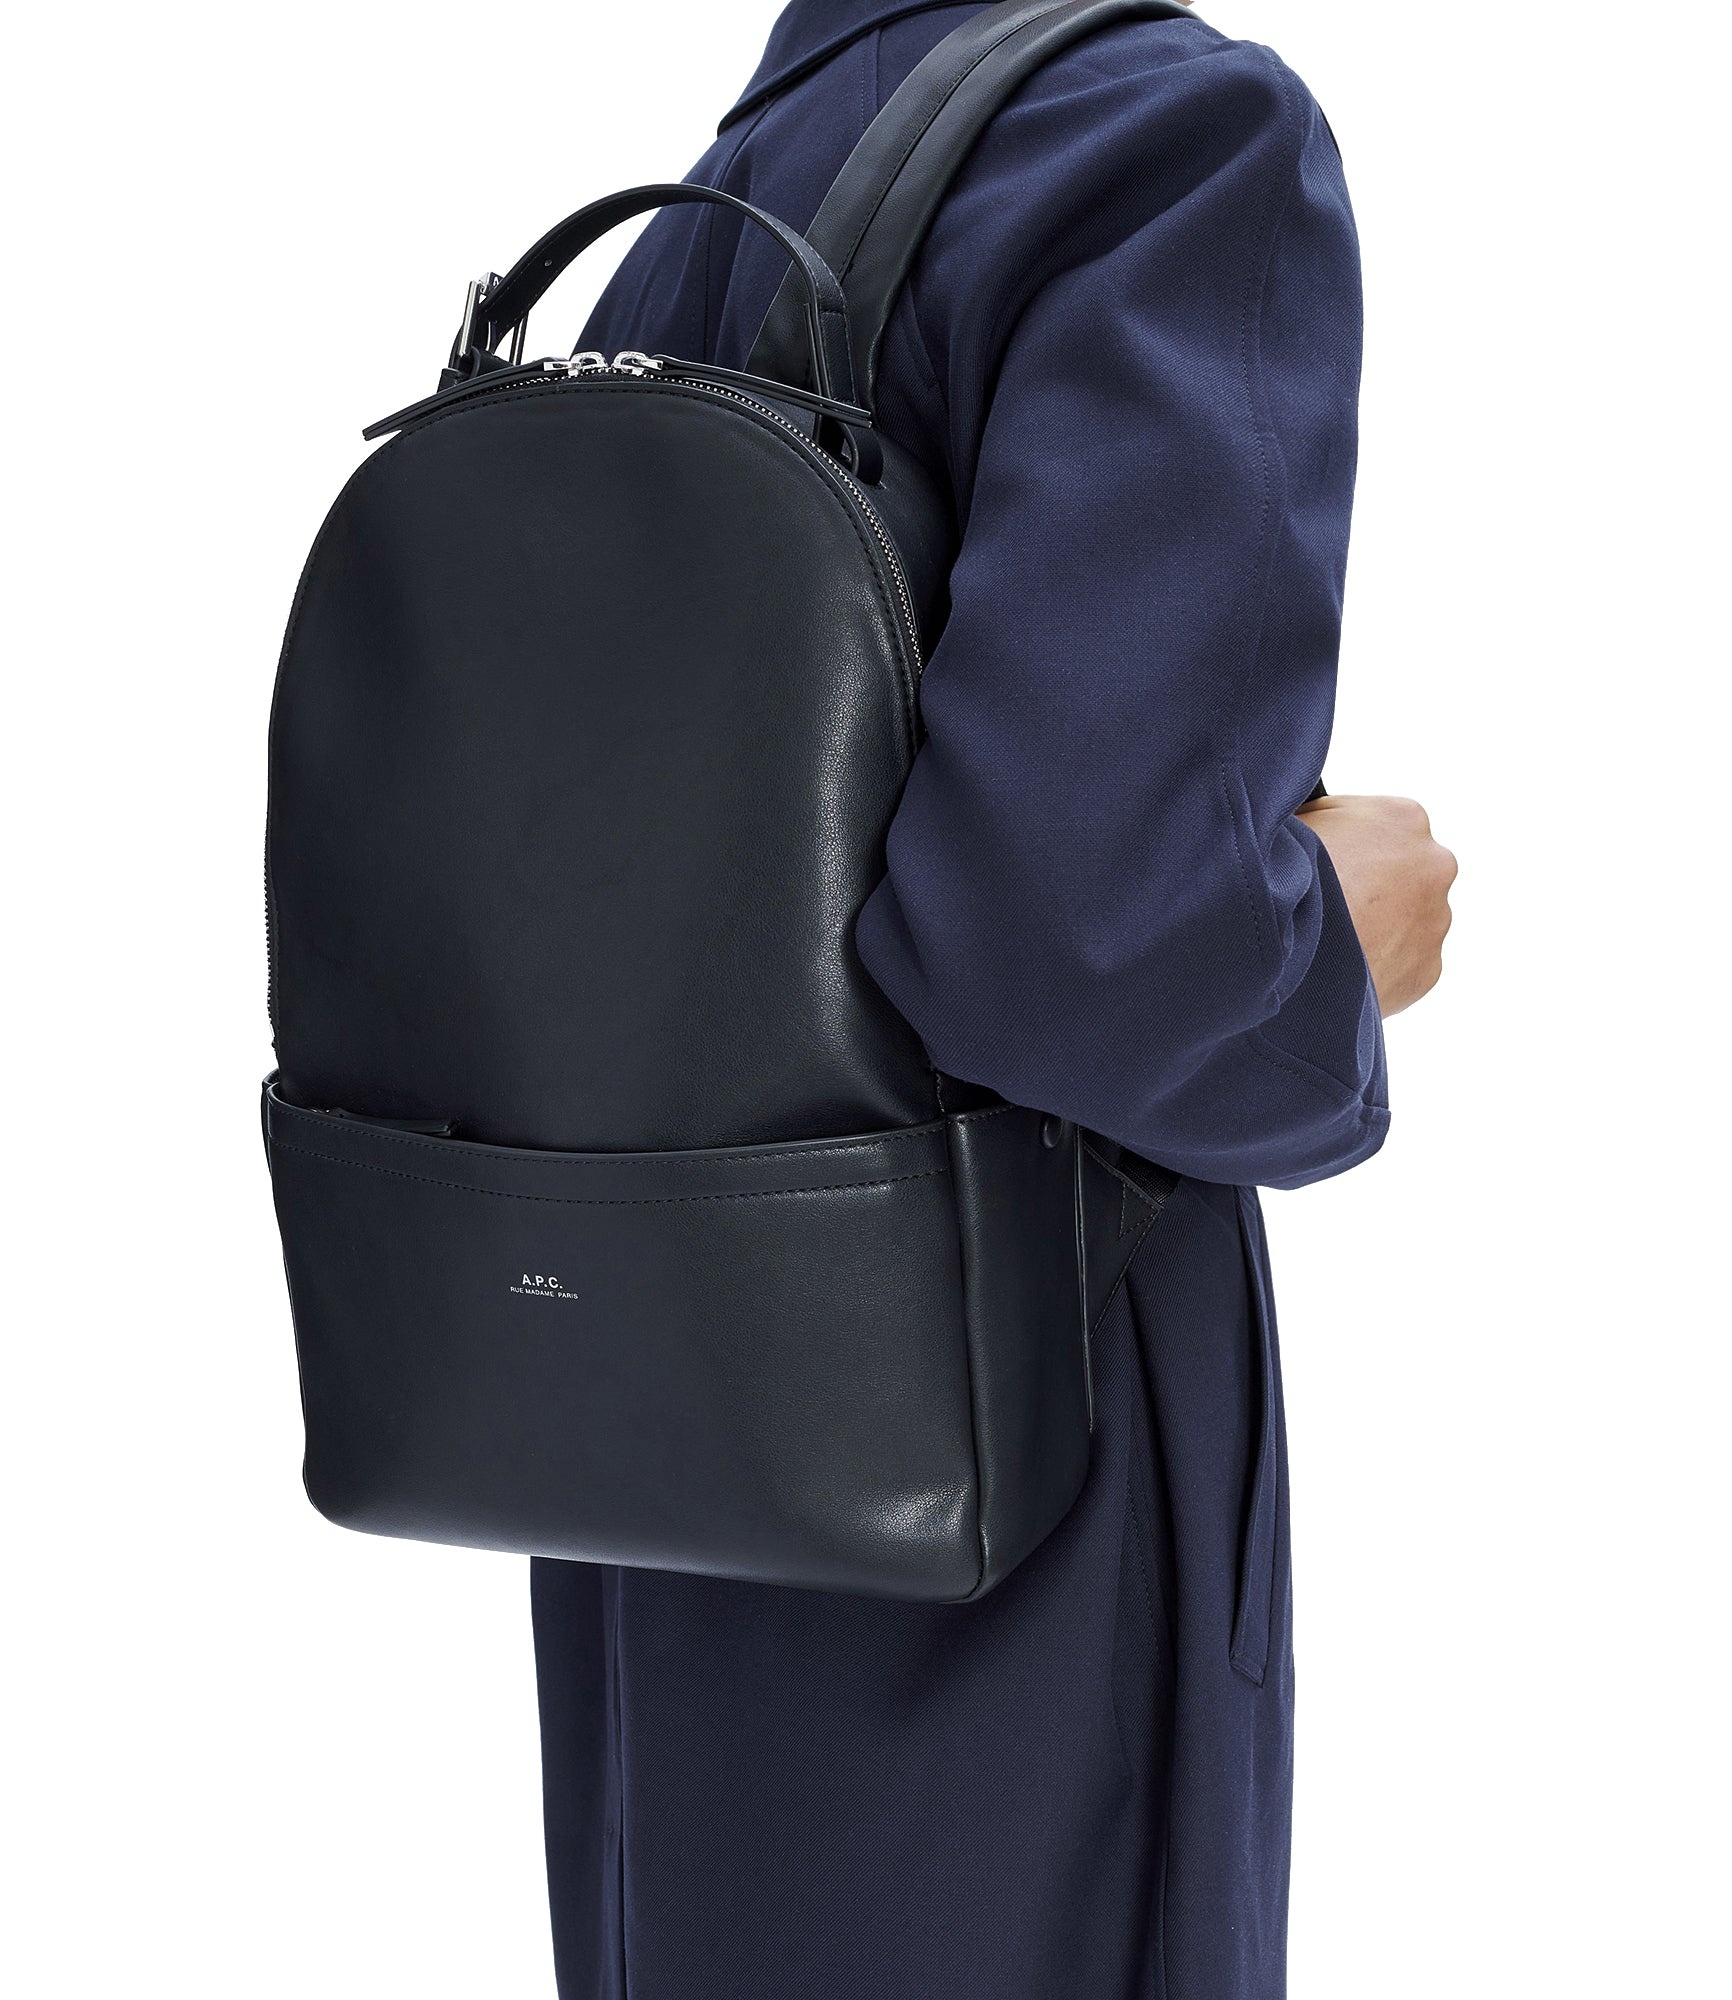 Nino backpack - 2